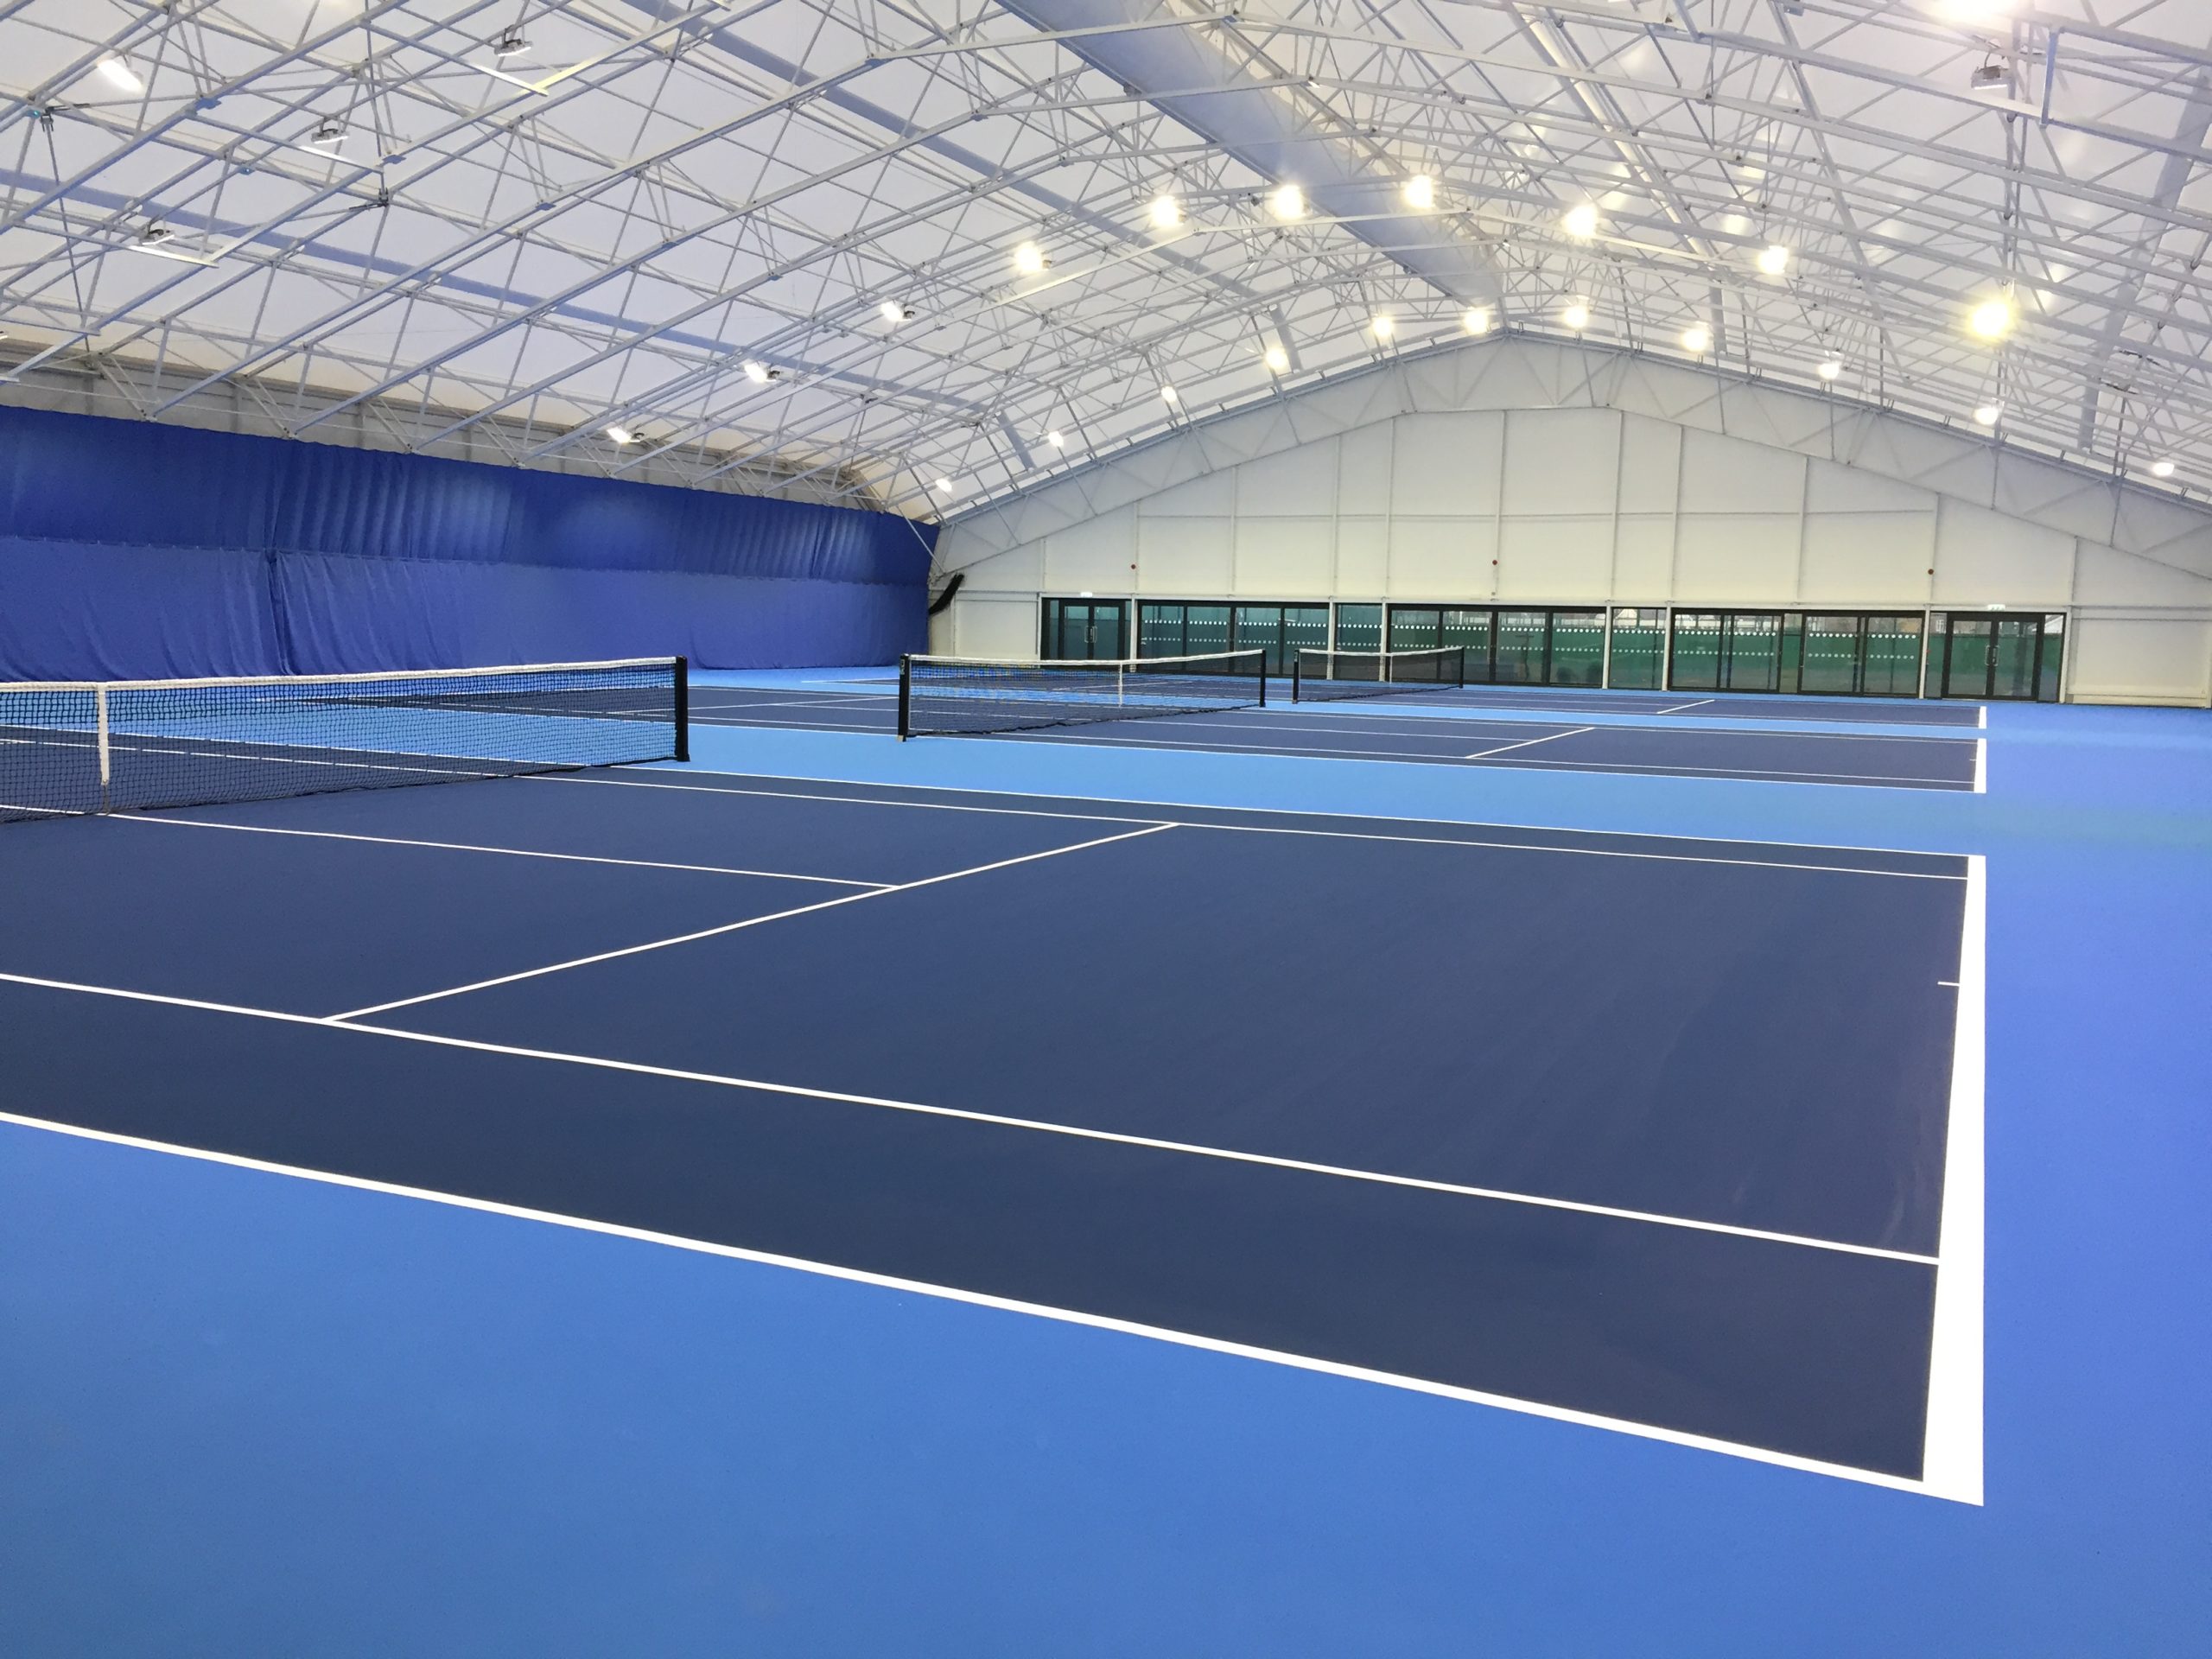 Roehampton Tennis Club